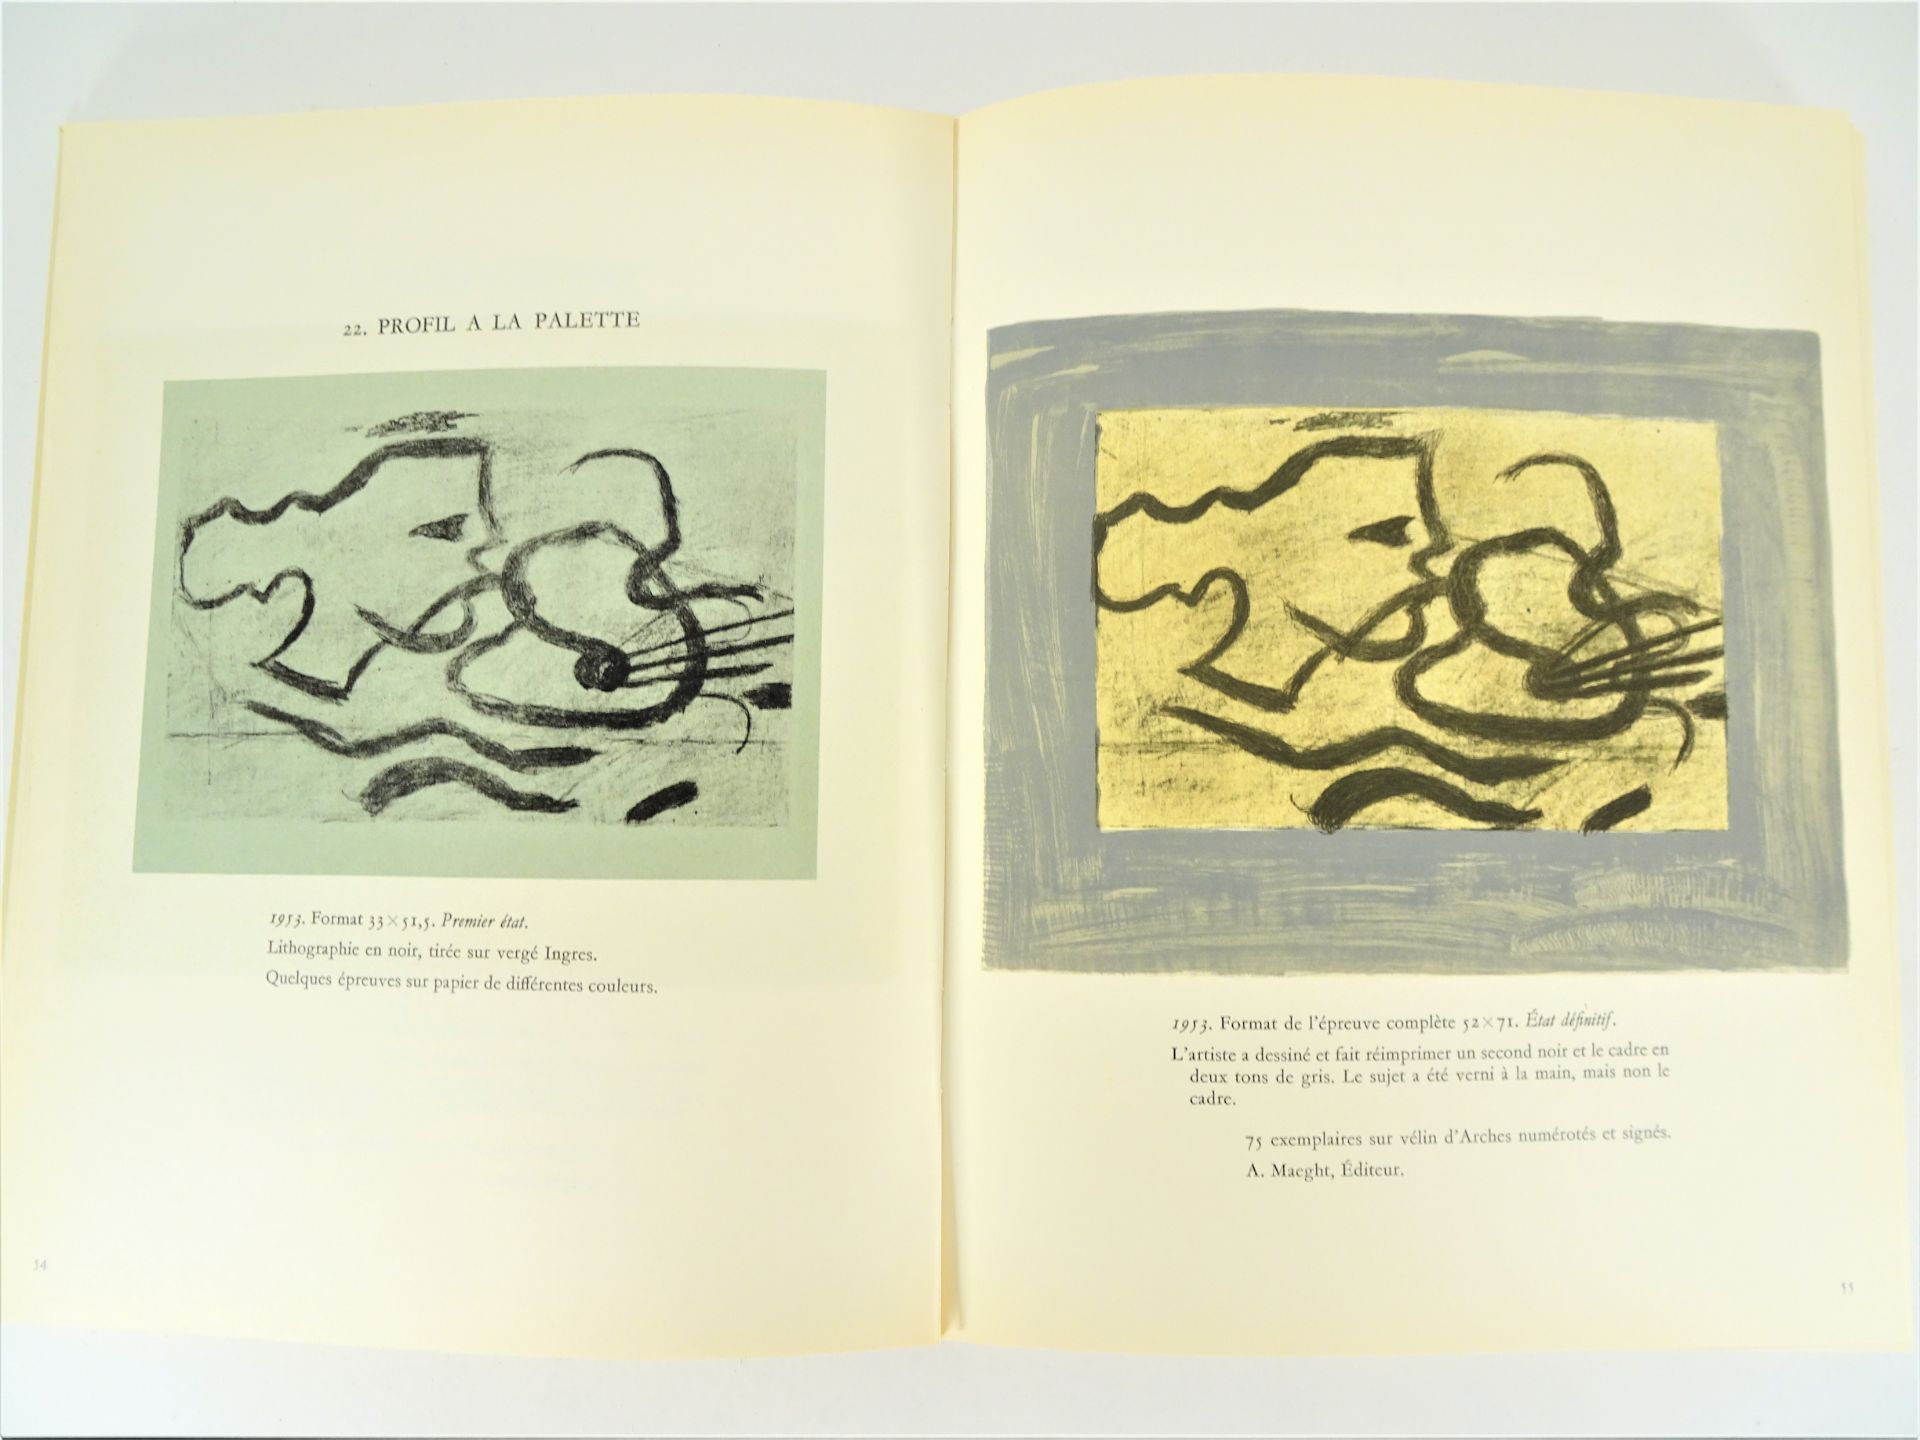 |Art| George Braque, "Braque lithographe", 1963, édition limitée. Fernand Mourlot, catalogue - Image 3 of 12